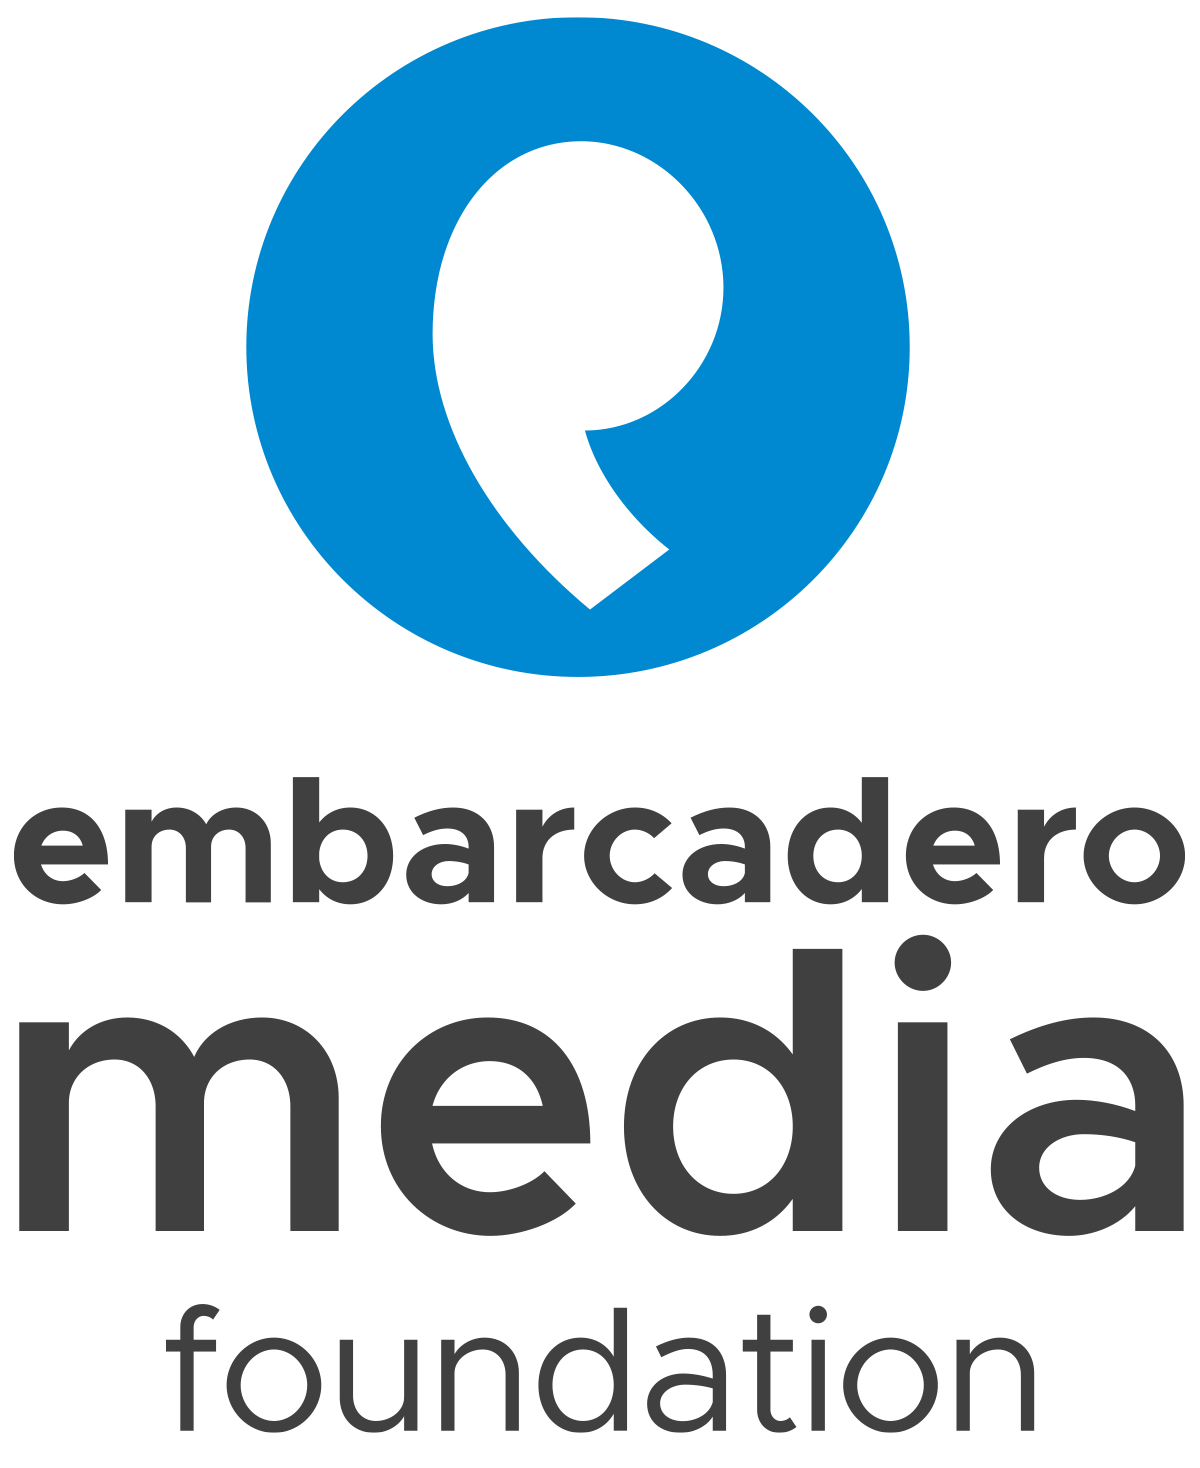 Embarcadero Media